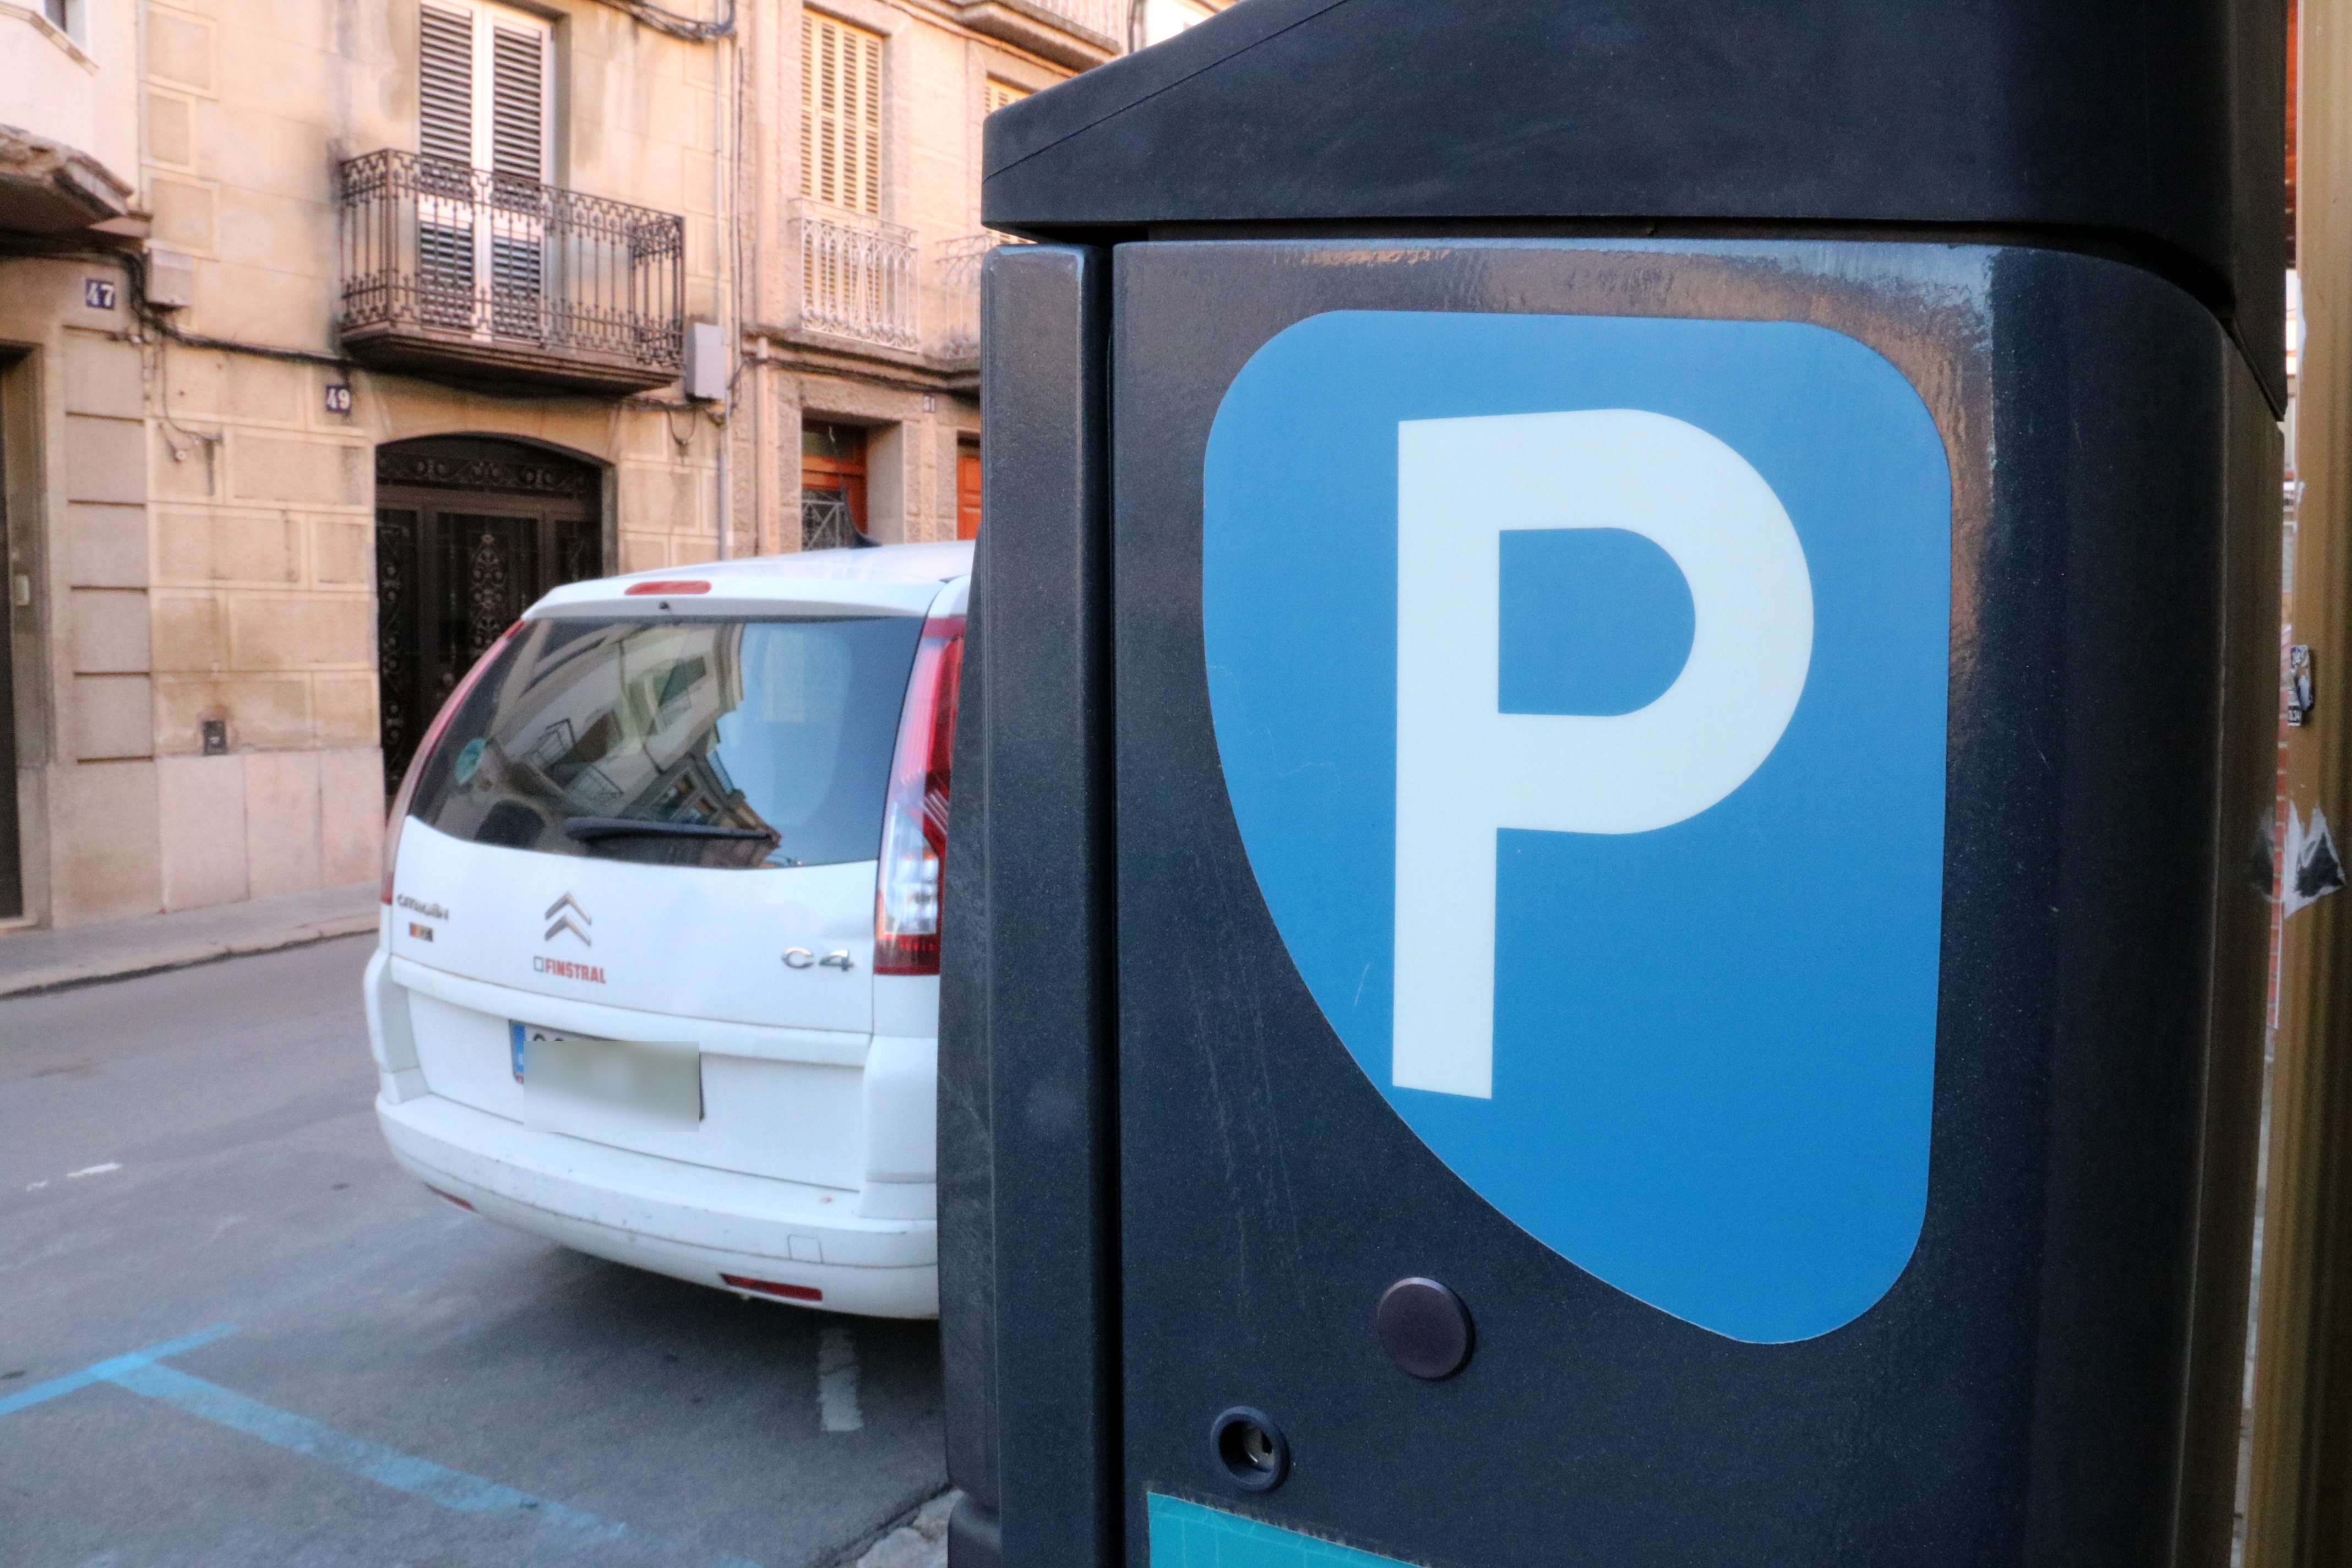 Huelga de los vigilantes de zonas azules y verdes de aparcamiento en Barcelona a partir del 7 de enero